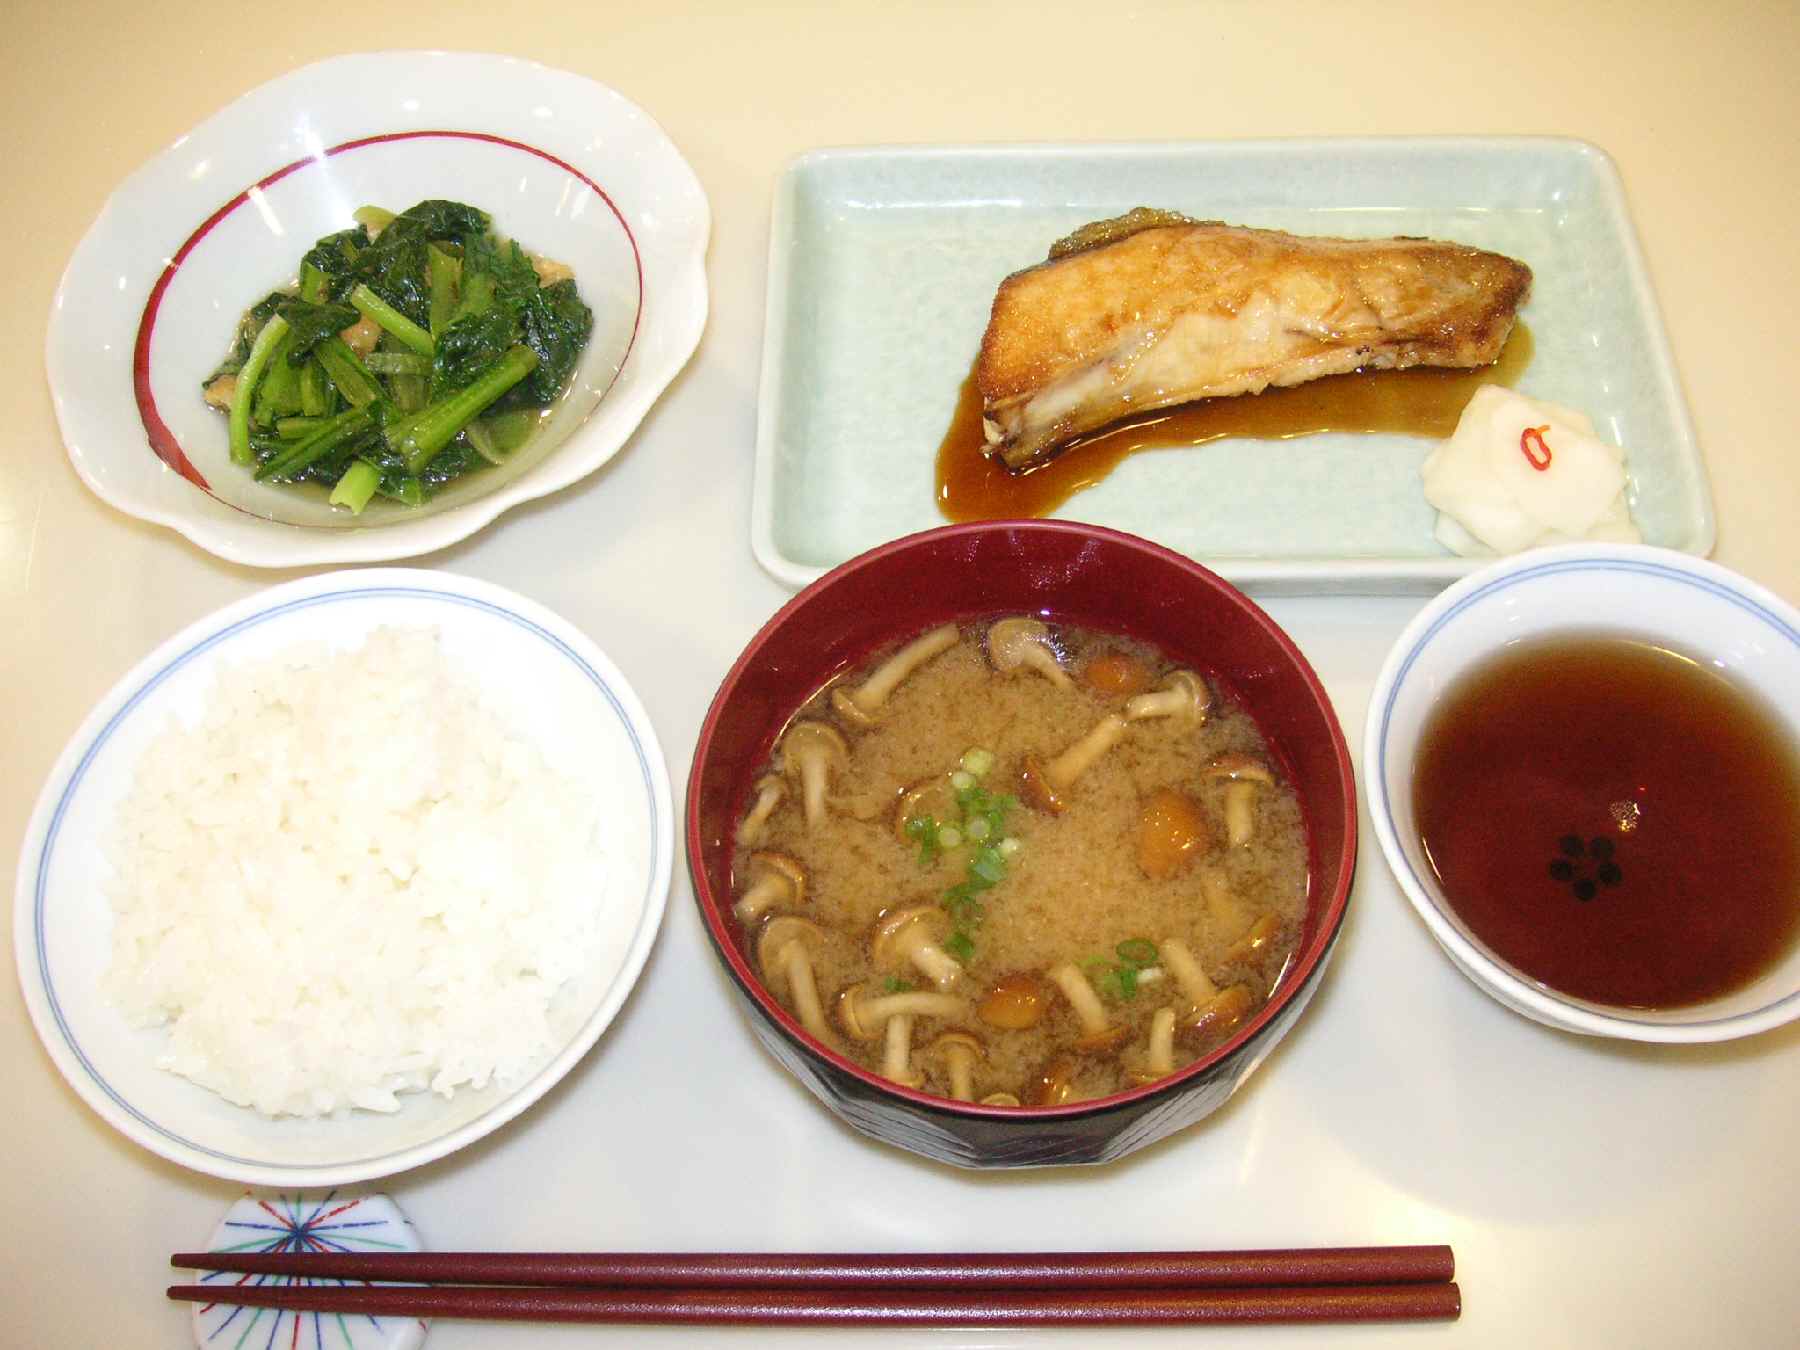 ベターホーム料理教室 ぶりの照り焼き 小松菜と油揚げの煮びたし 豆腐となめこの味噌汁 富山に魅了された気象予報士の日記 富山は自然豊かで 人も温かい とてもいい所